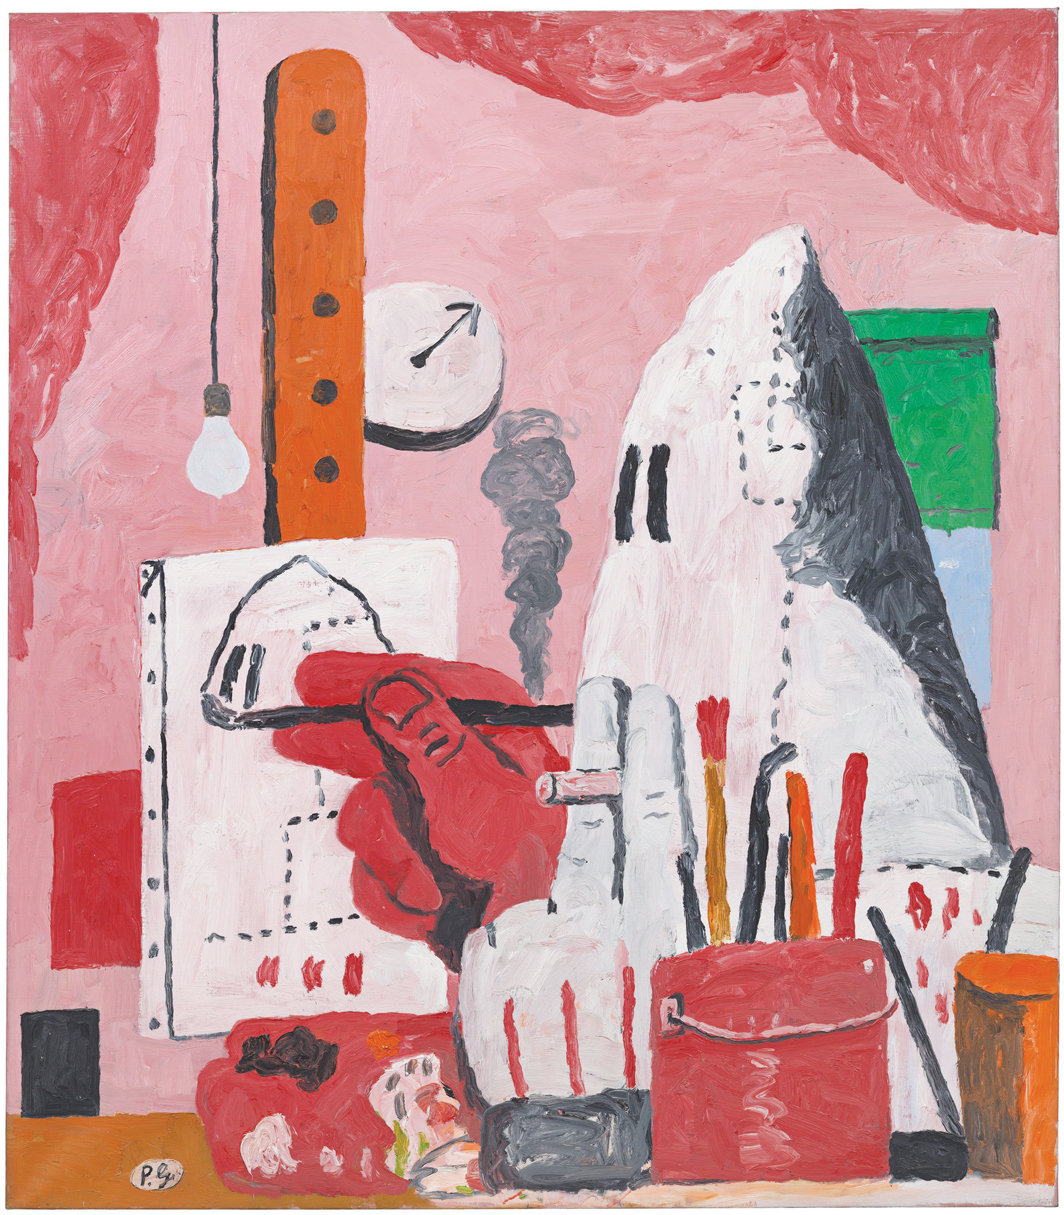 菲利普·加斯顿，《工作室》，1969，布面油画，73 1⁄4 x 71".